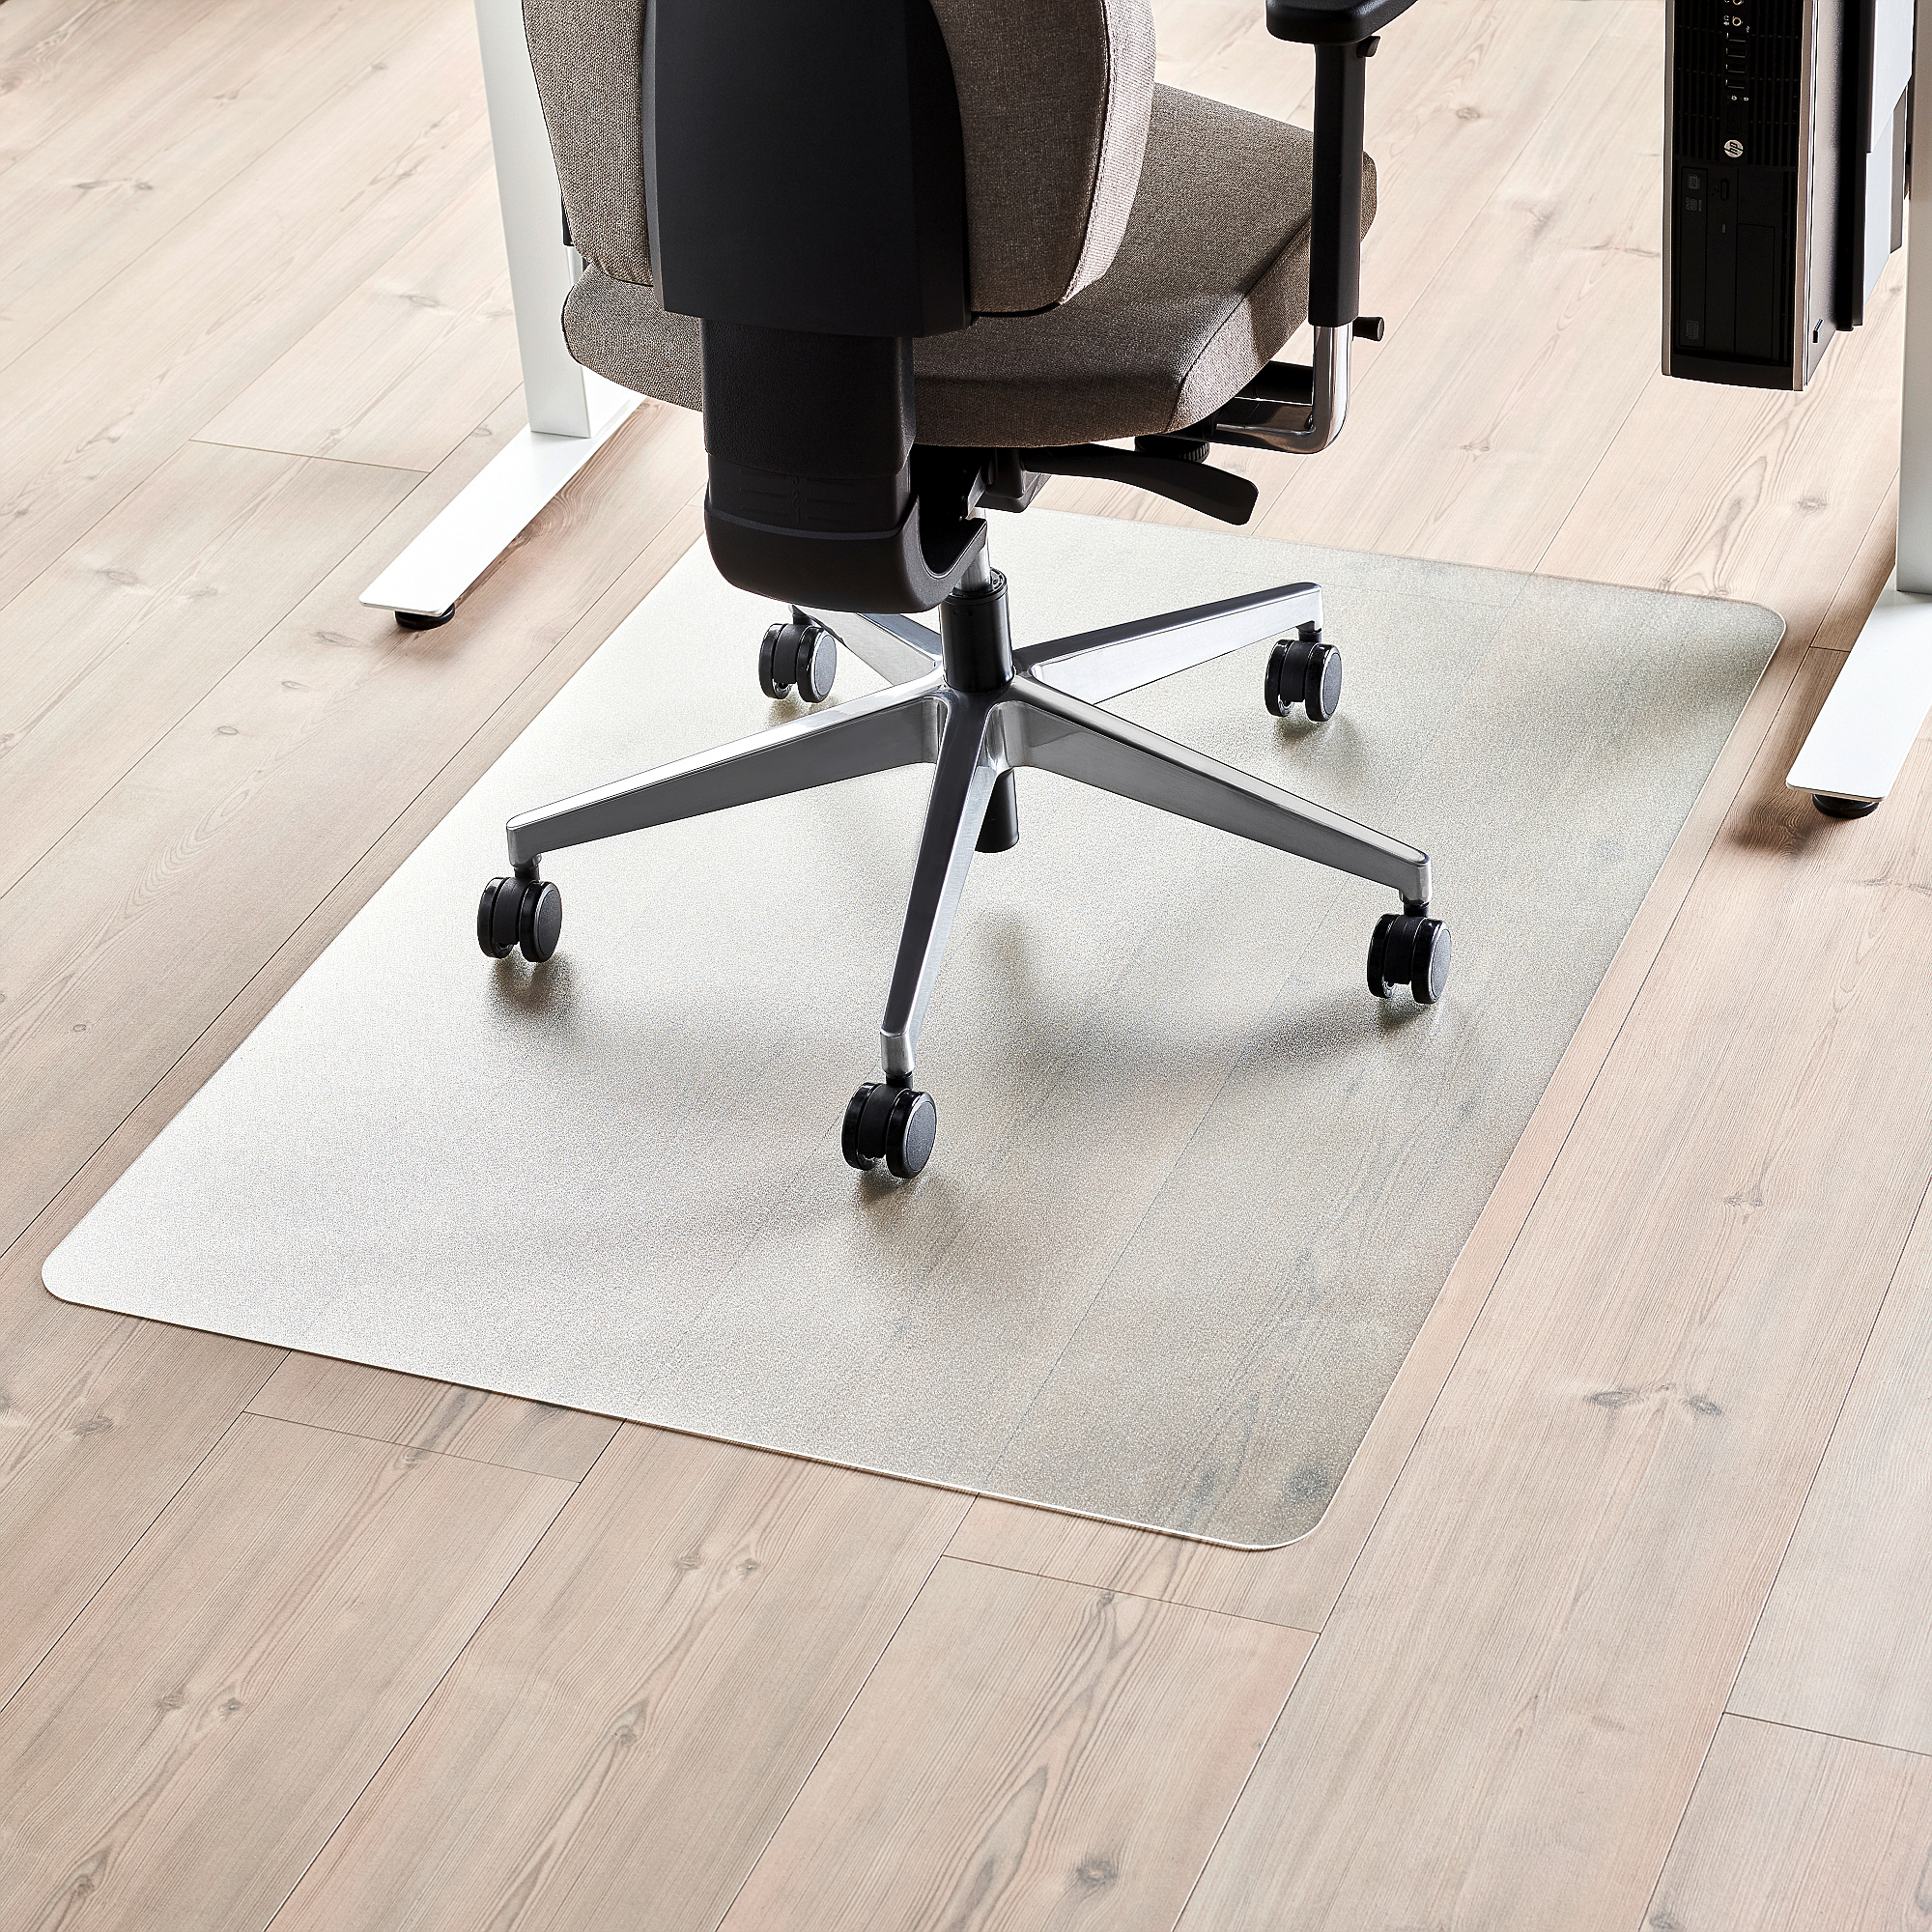 Bodenschutzmatte für Büro und Heimschreibtischstühle Runde Bürostuhl Unterlage mit Einer Vielzahl von Weißen Katzenmustern,A-80cm Bürostuhlunterlage Bodenschutzmatte